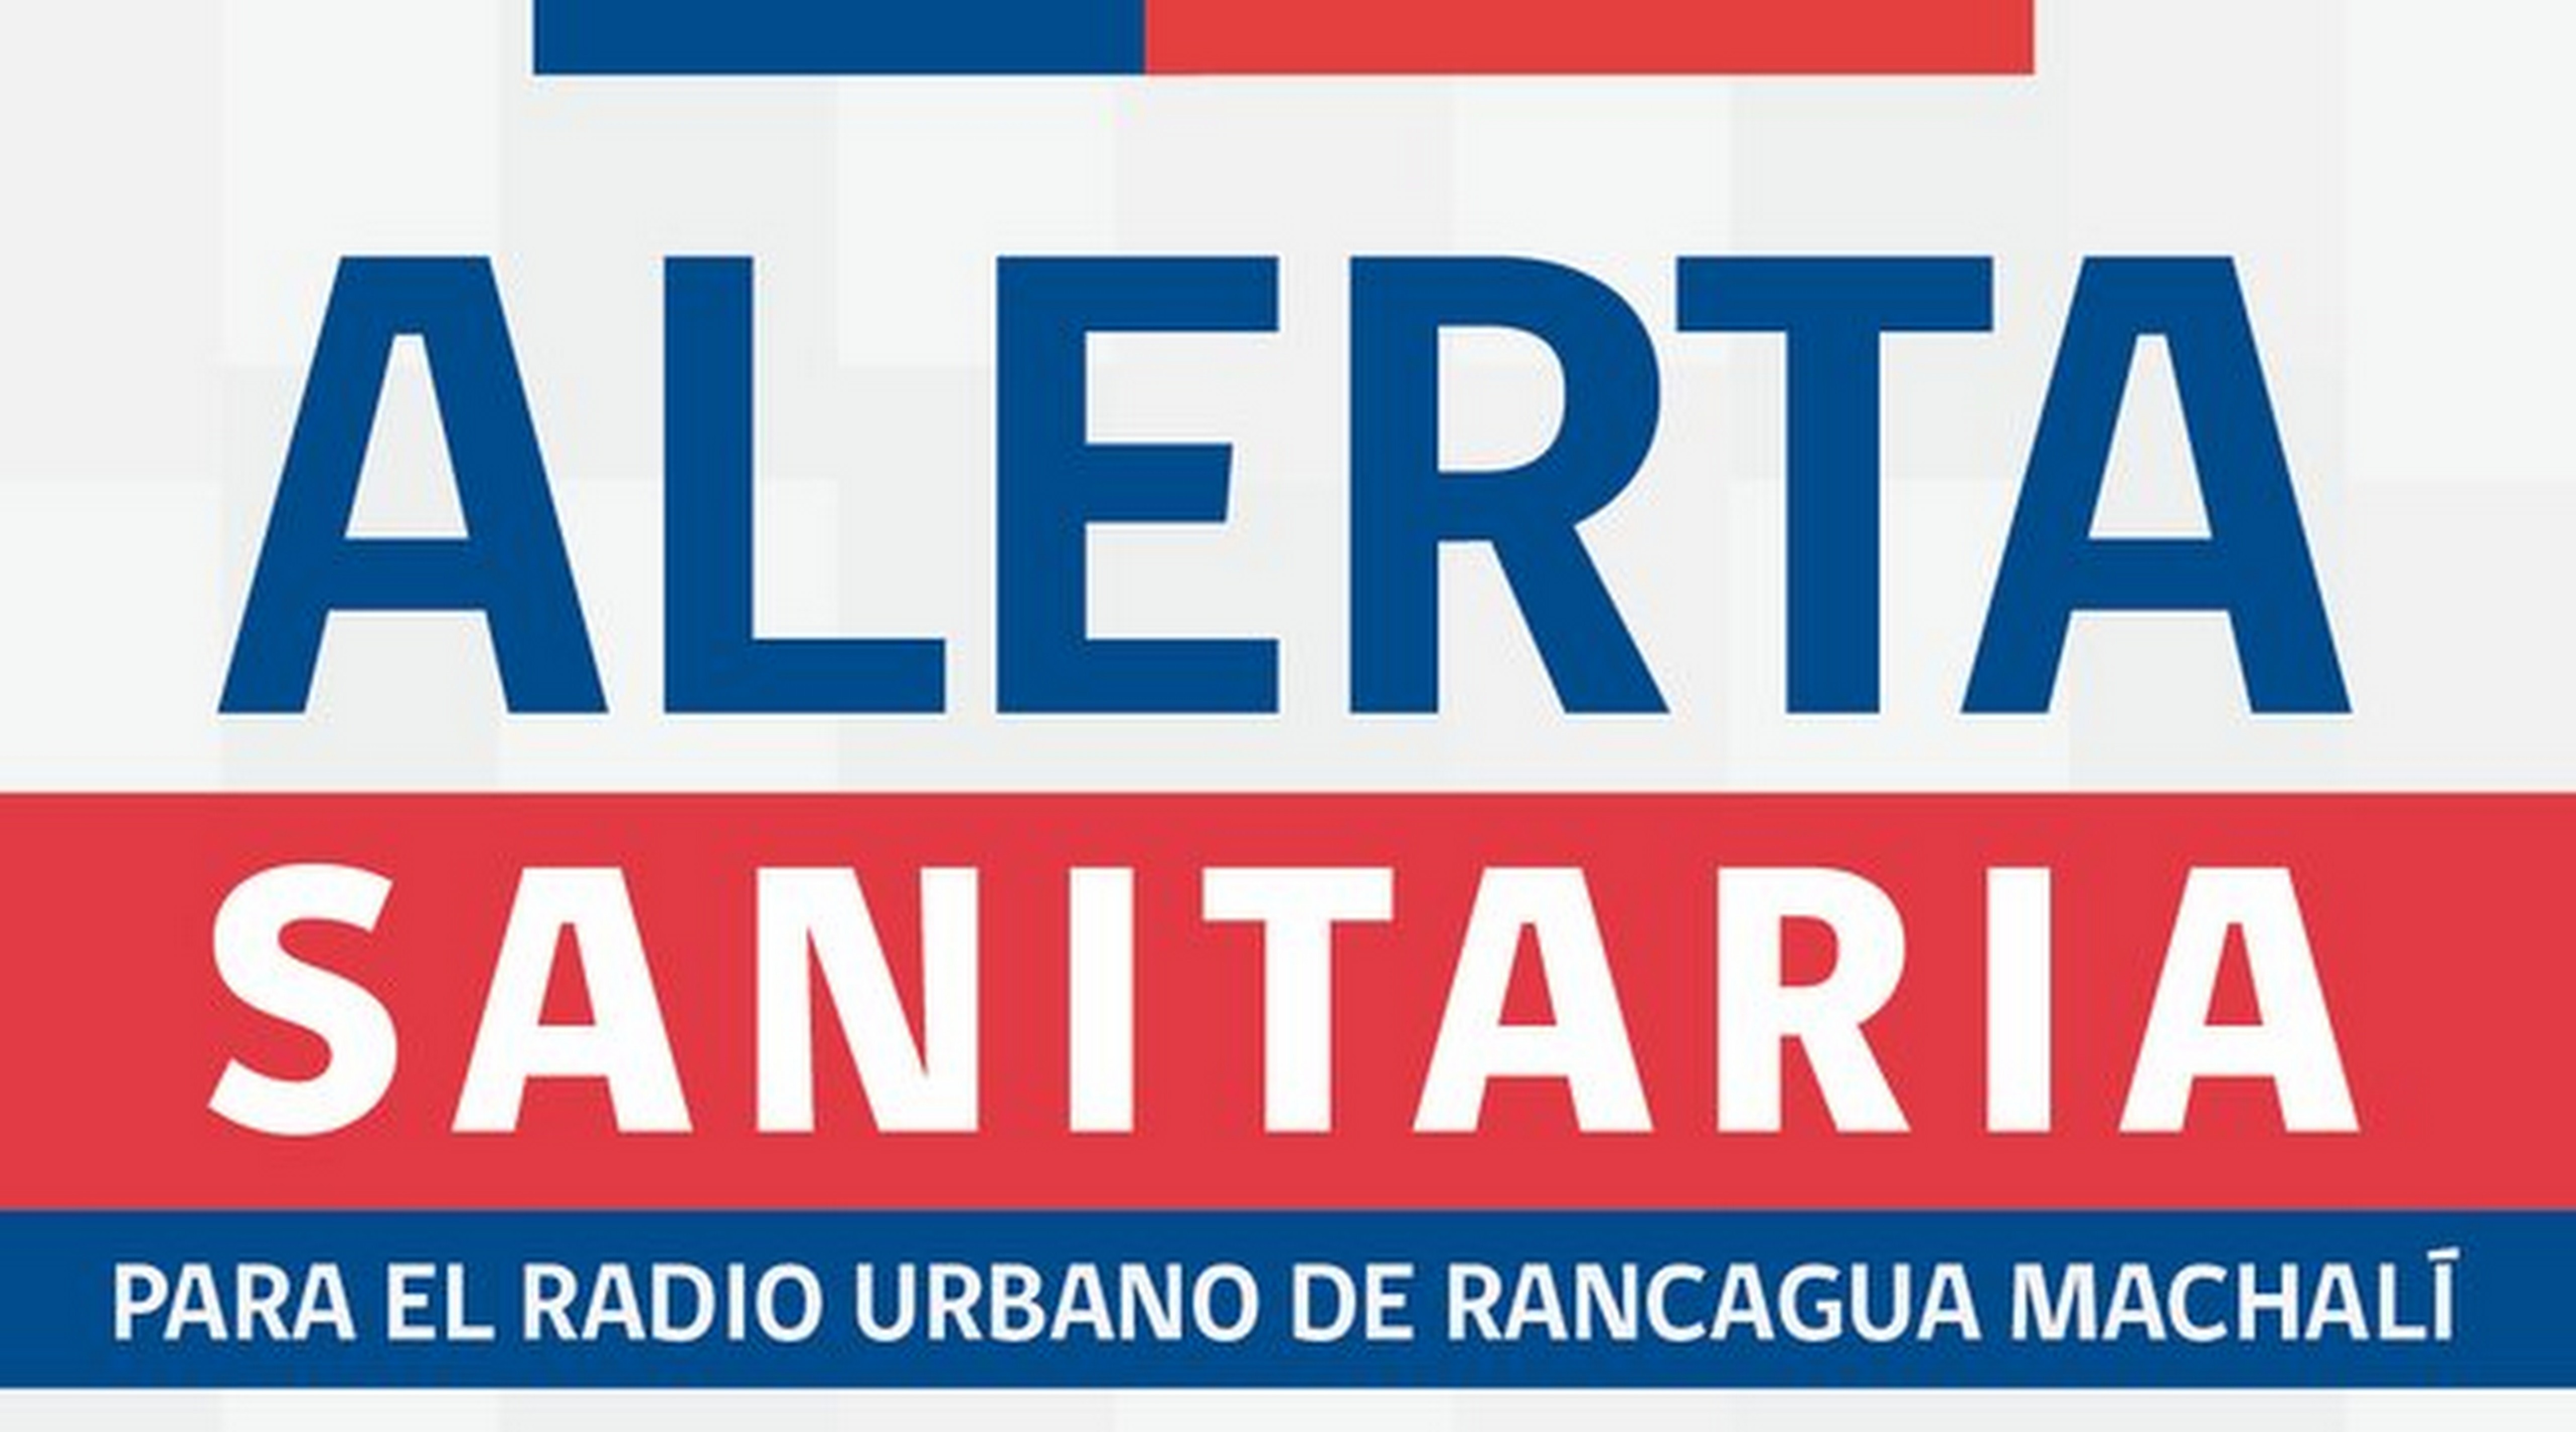 Decretan Alerta Sanitaria en Rancagua y Machalí para este martes 20 de junio